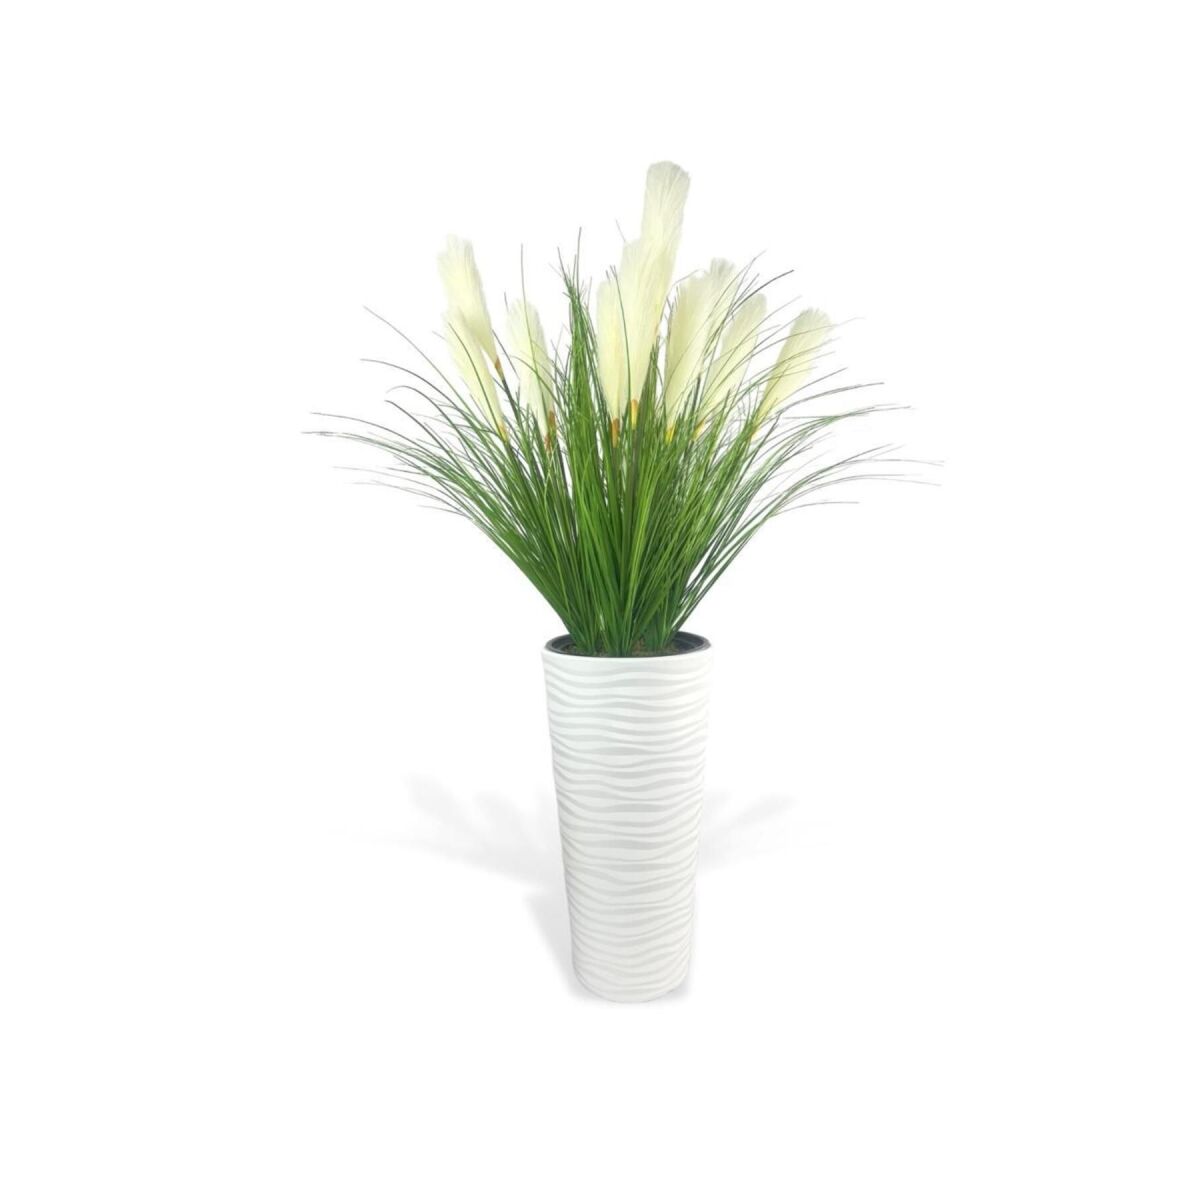 Yapay Çiçek Panpas Püskül Salon Bitkisi Beyaz Uzun Kumsal Vazoda 128*60Cm